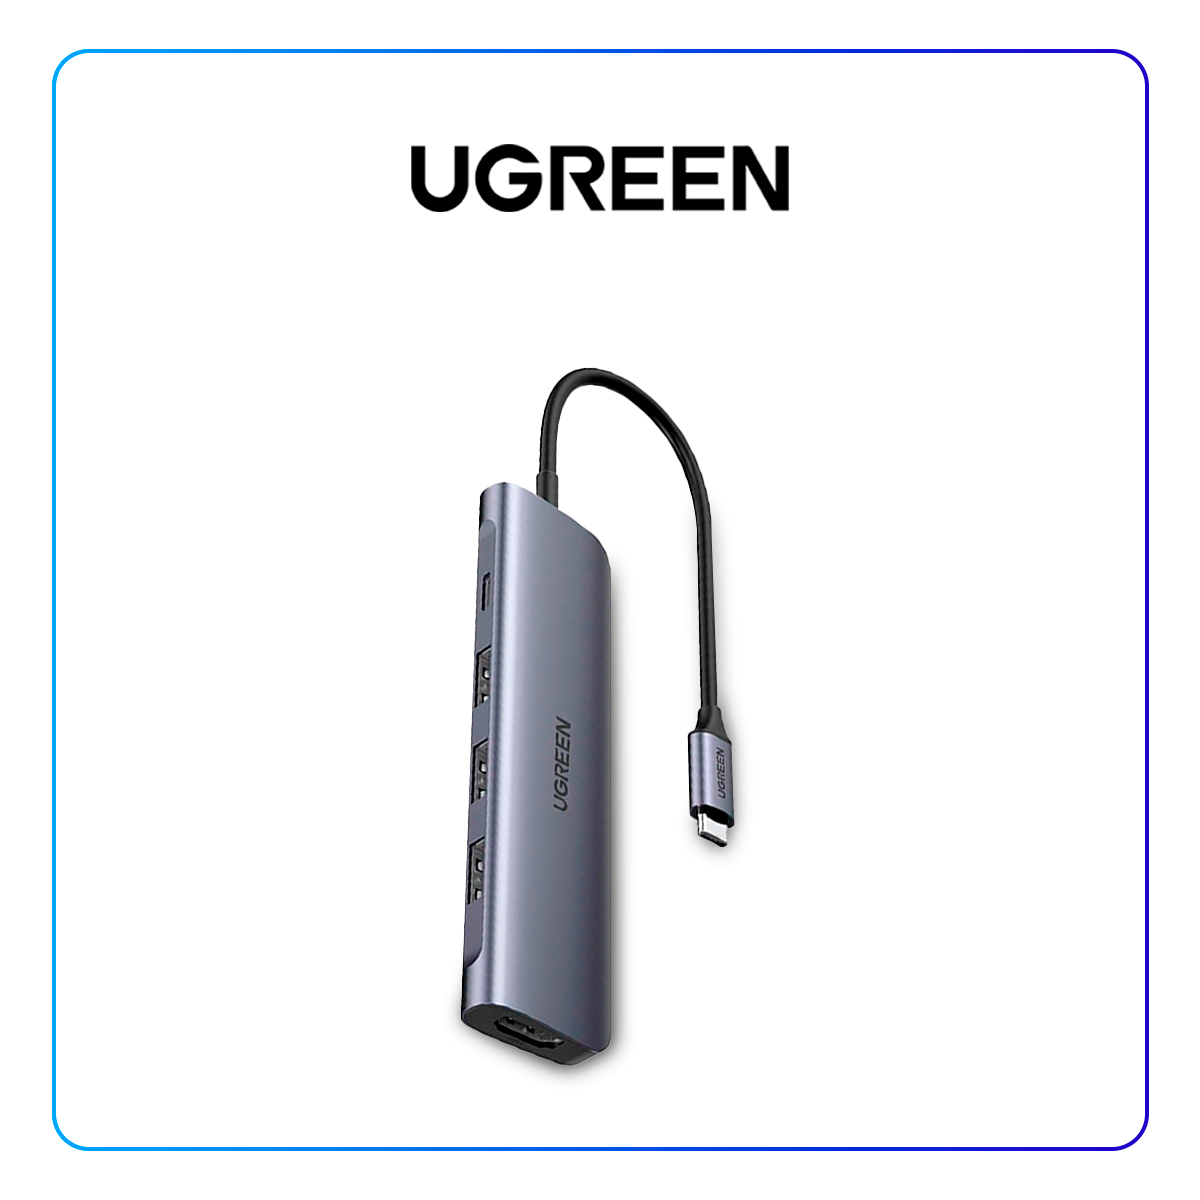 UGREEN HUB USB C 5 EN 1 CON HDMI 4K (3 X USB 3.0, 1 X HDMI, 1 X USB C) CM136 ( 50209 )